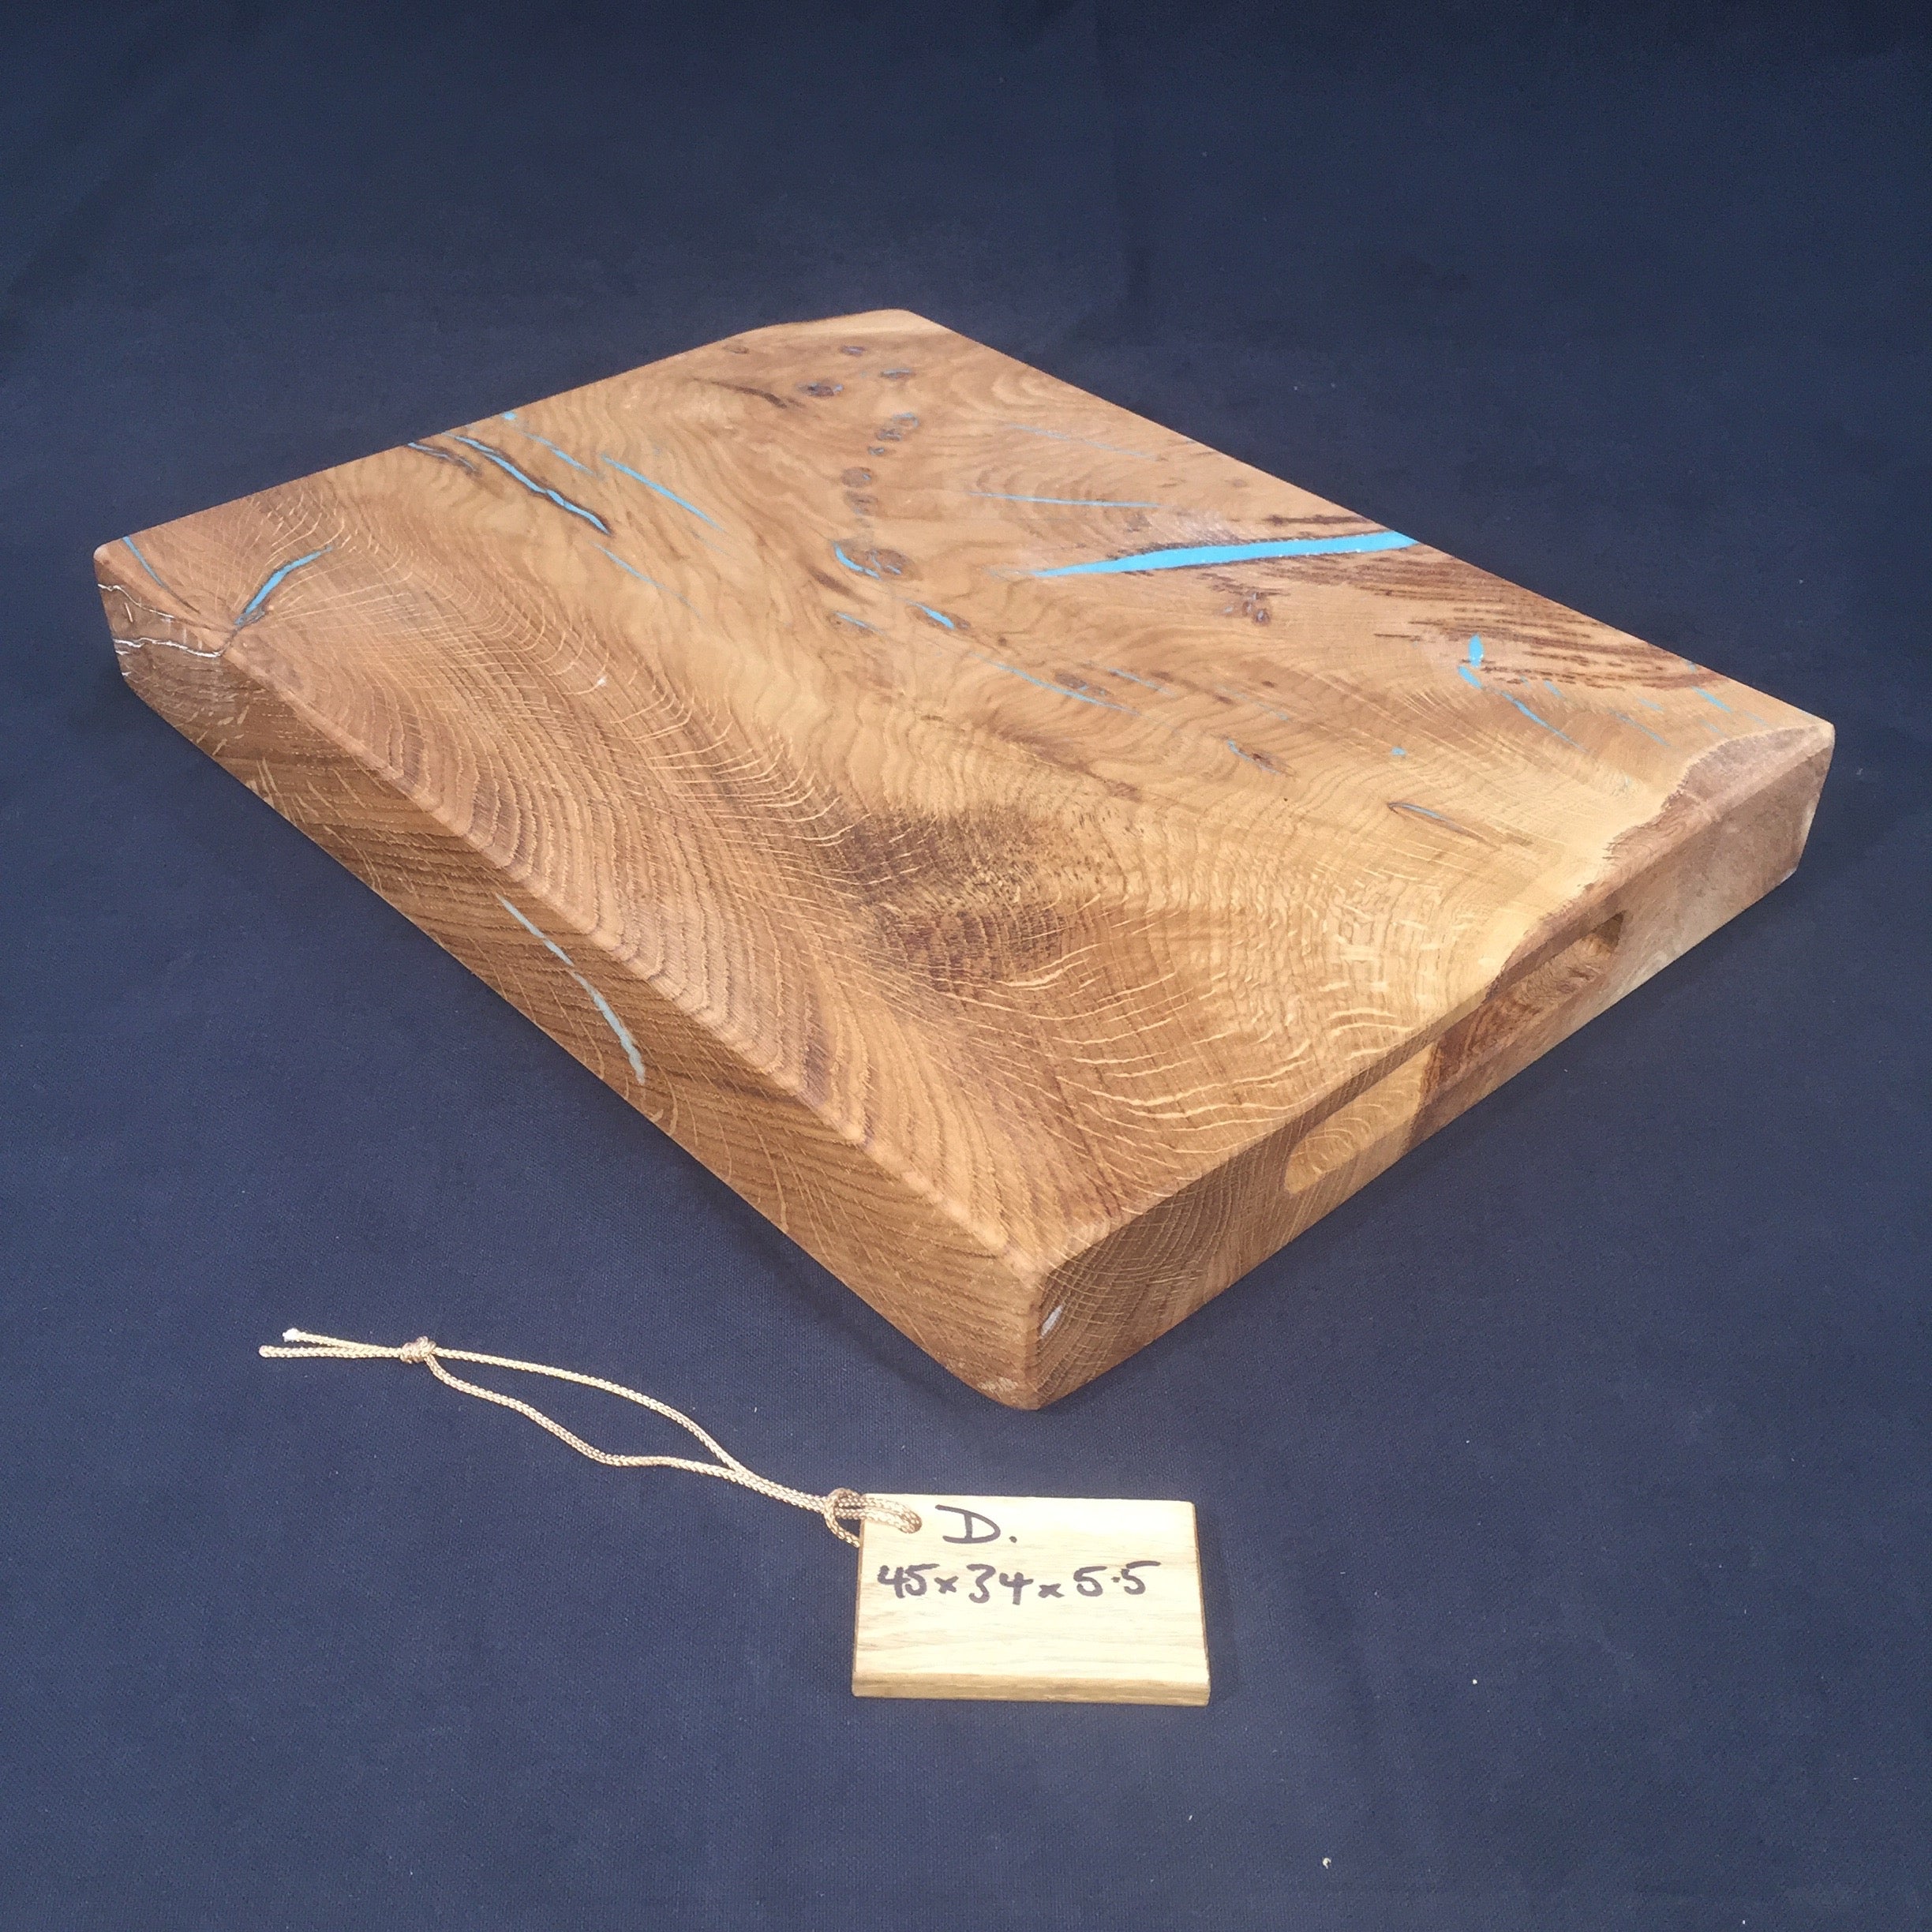 Oak Chopping Board 30x40 cm, oak